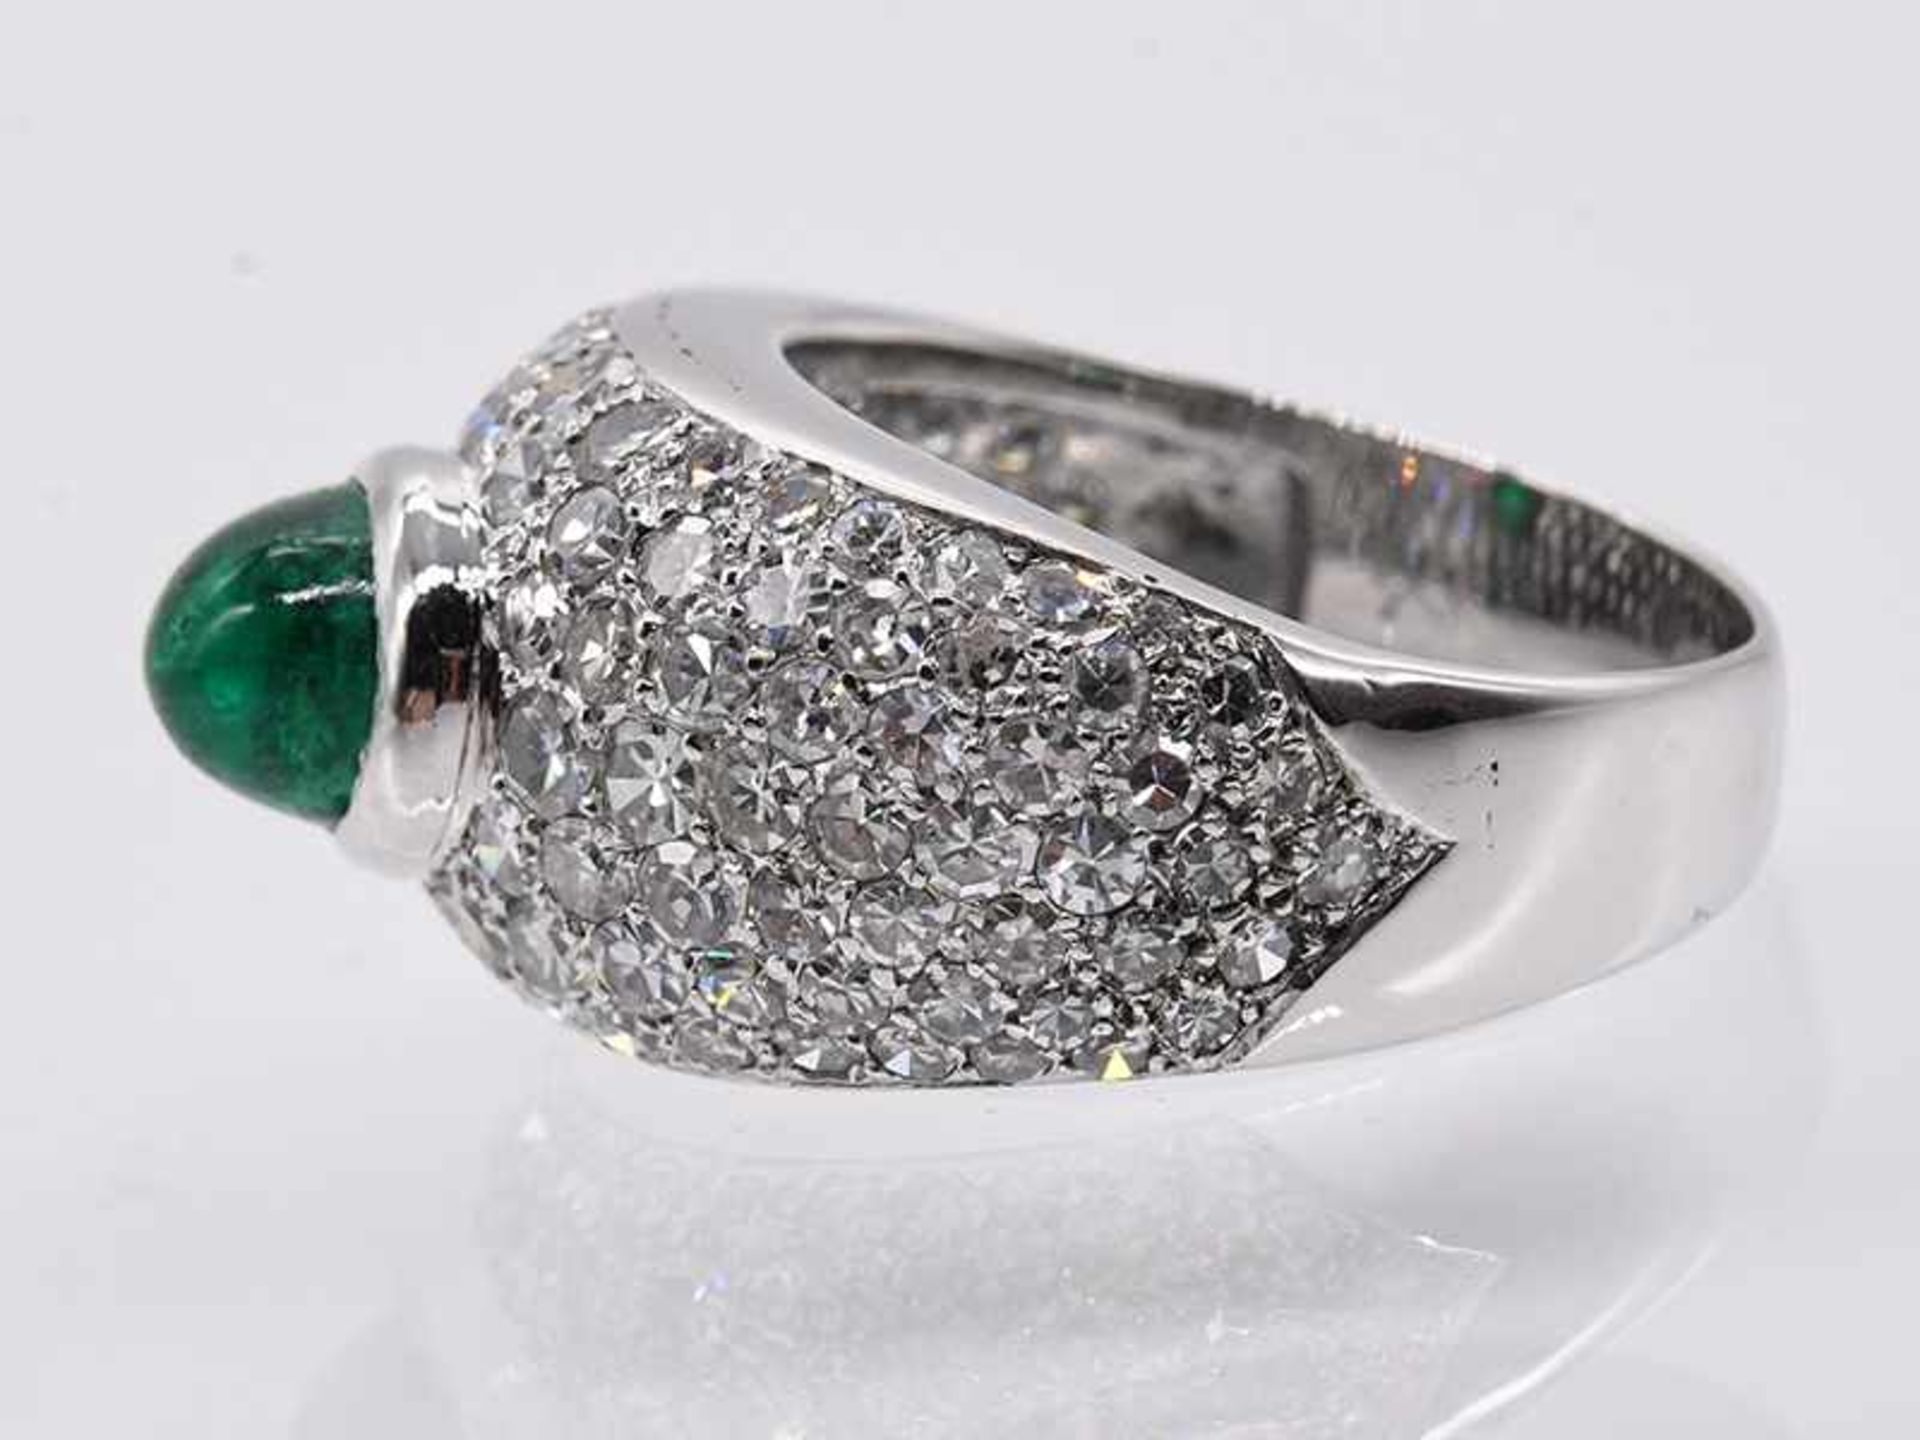 Bandring mit Smaragd-Cabochon ca. 1,5 ct und Achtkant-Diamanten, zusammen ca. 2 ct, 80-er Jahre. - Bild 6 aus 8